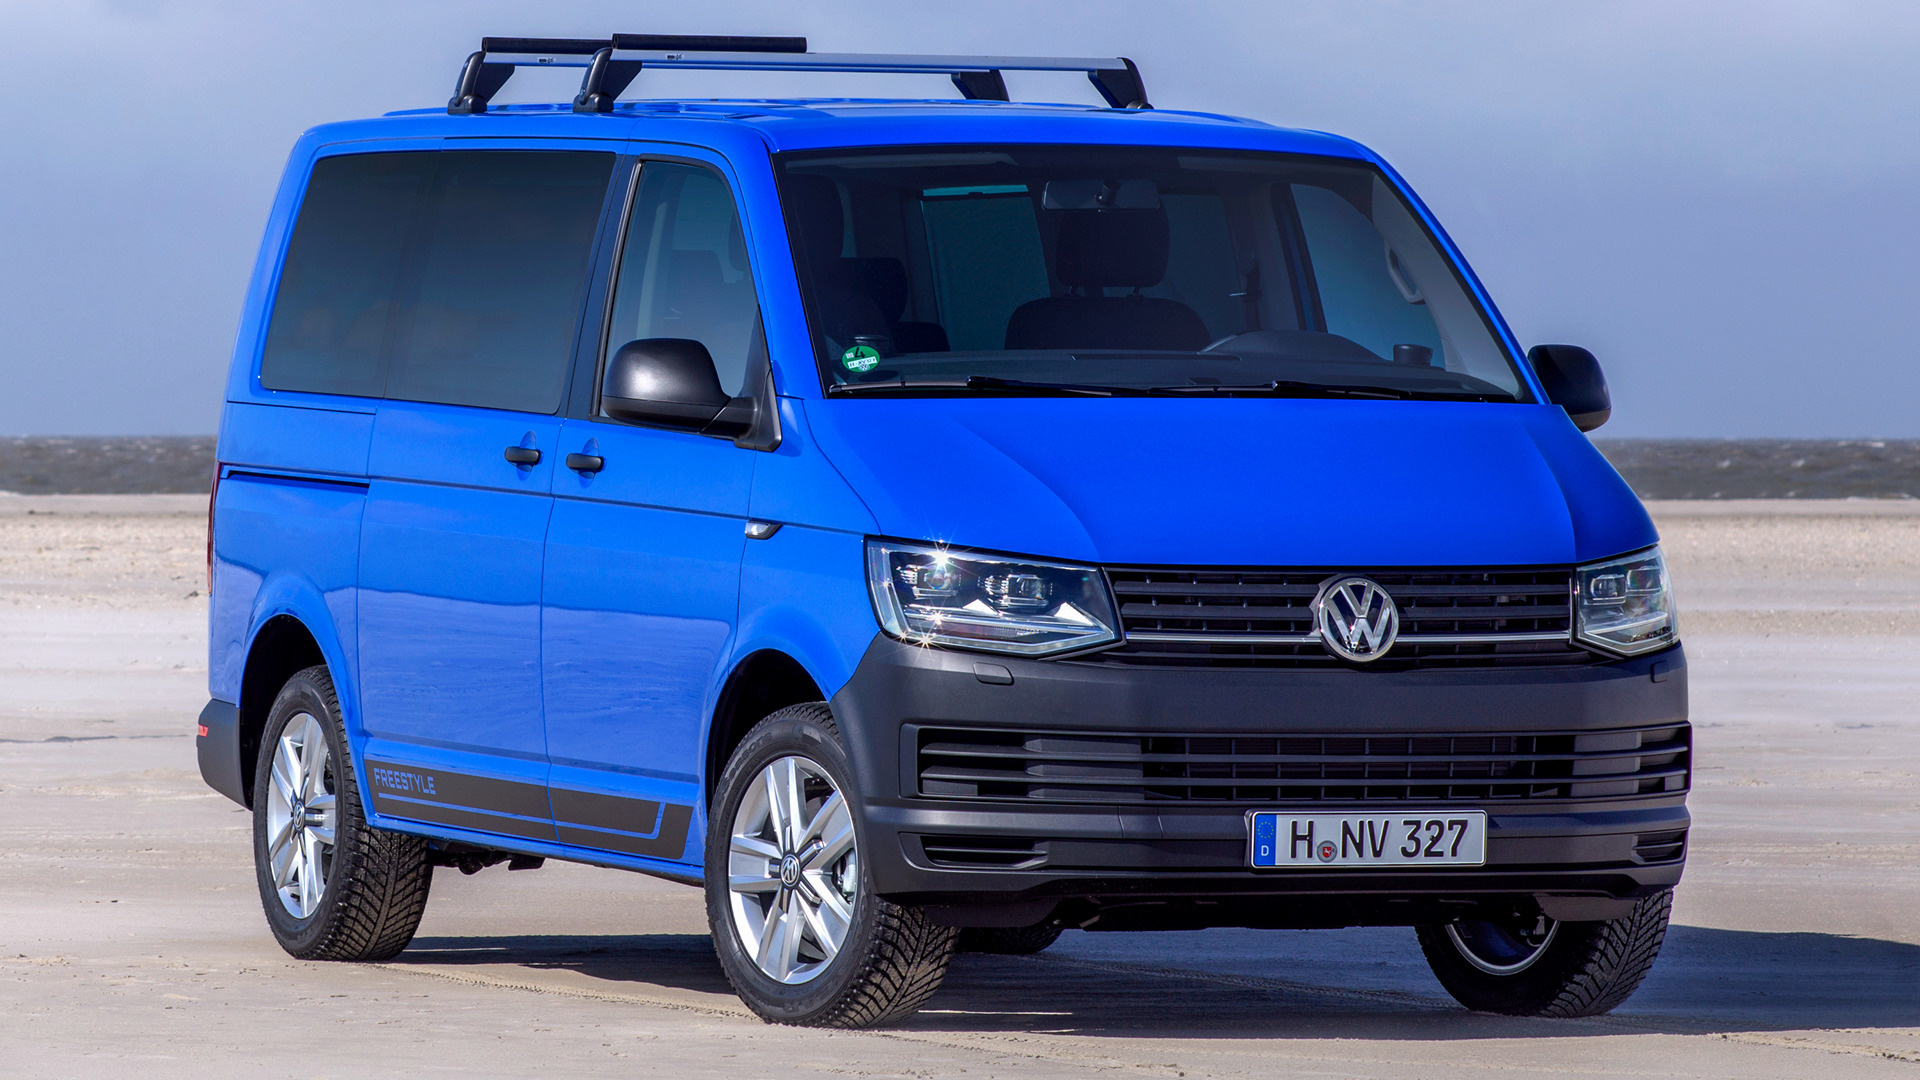 Vehicles Volkswagen Multivan HD Wallpaper | Background Image